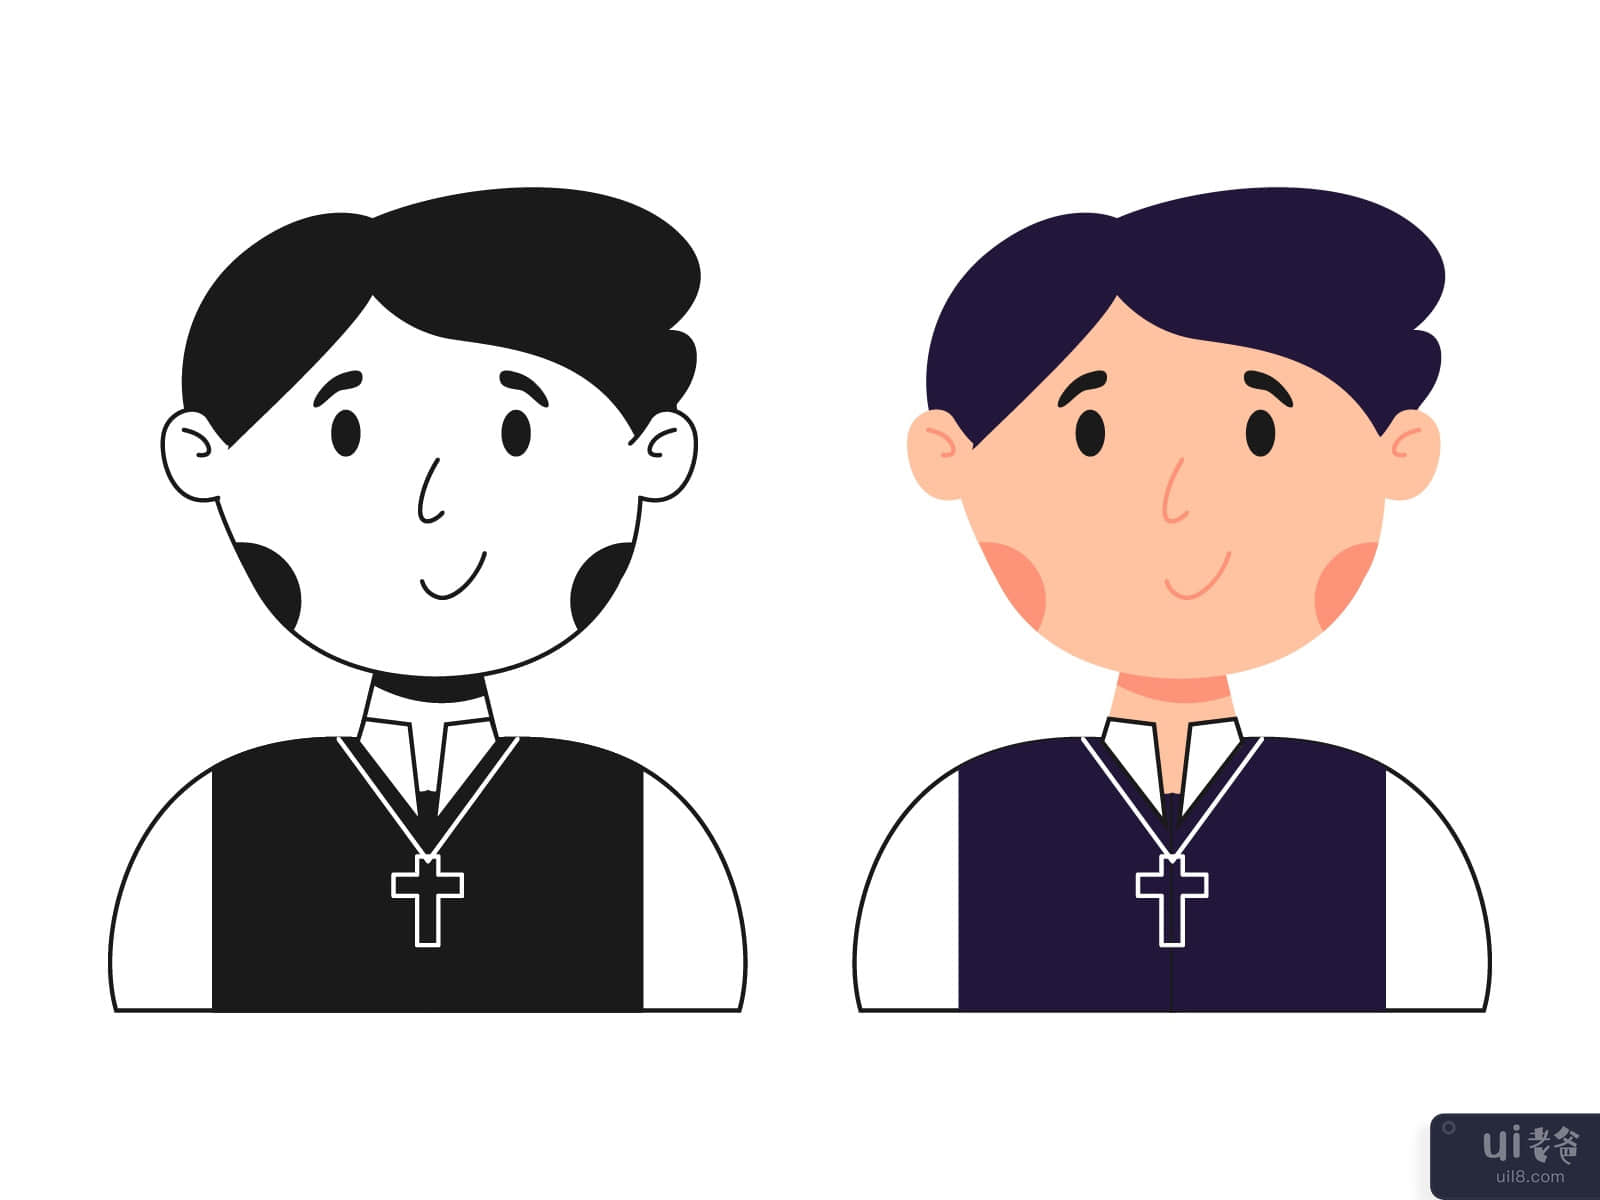 Catholic Boy Avatar Illustration